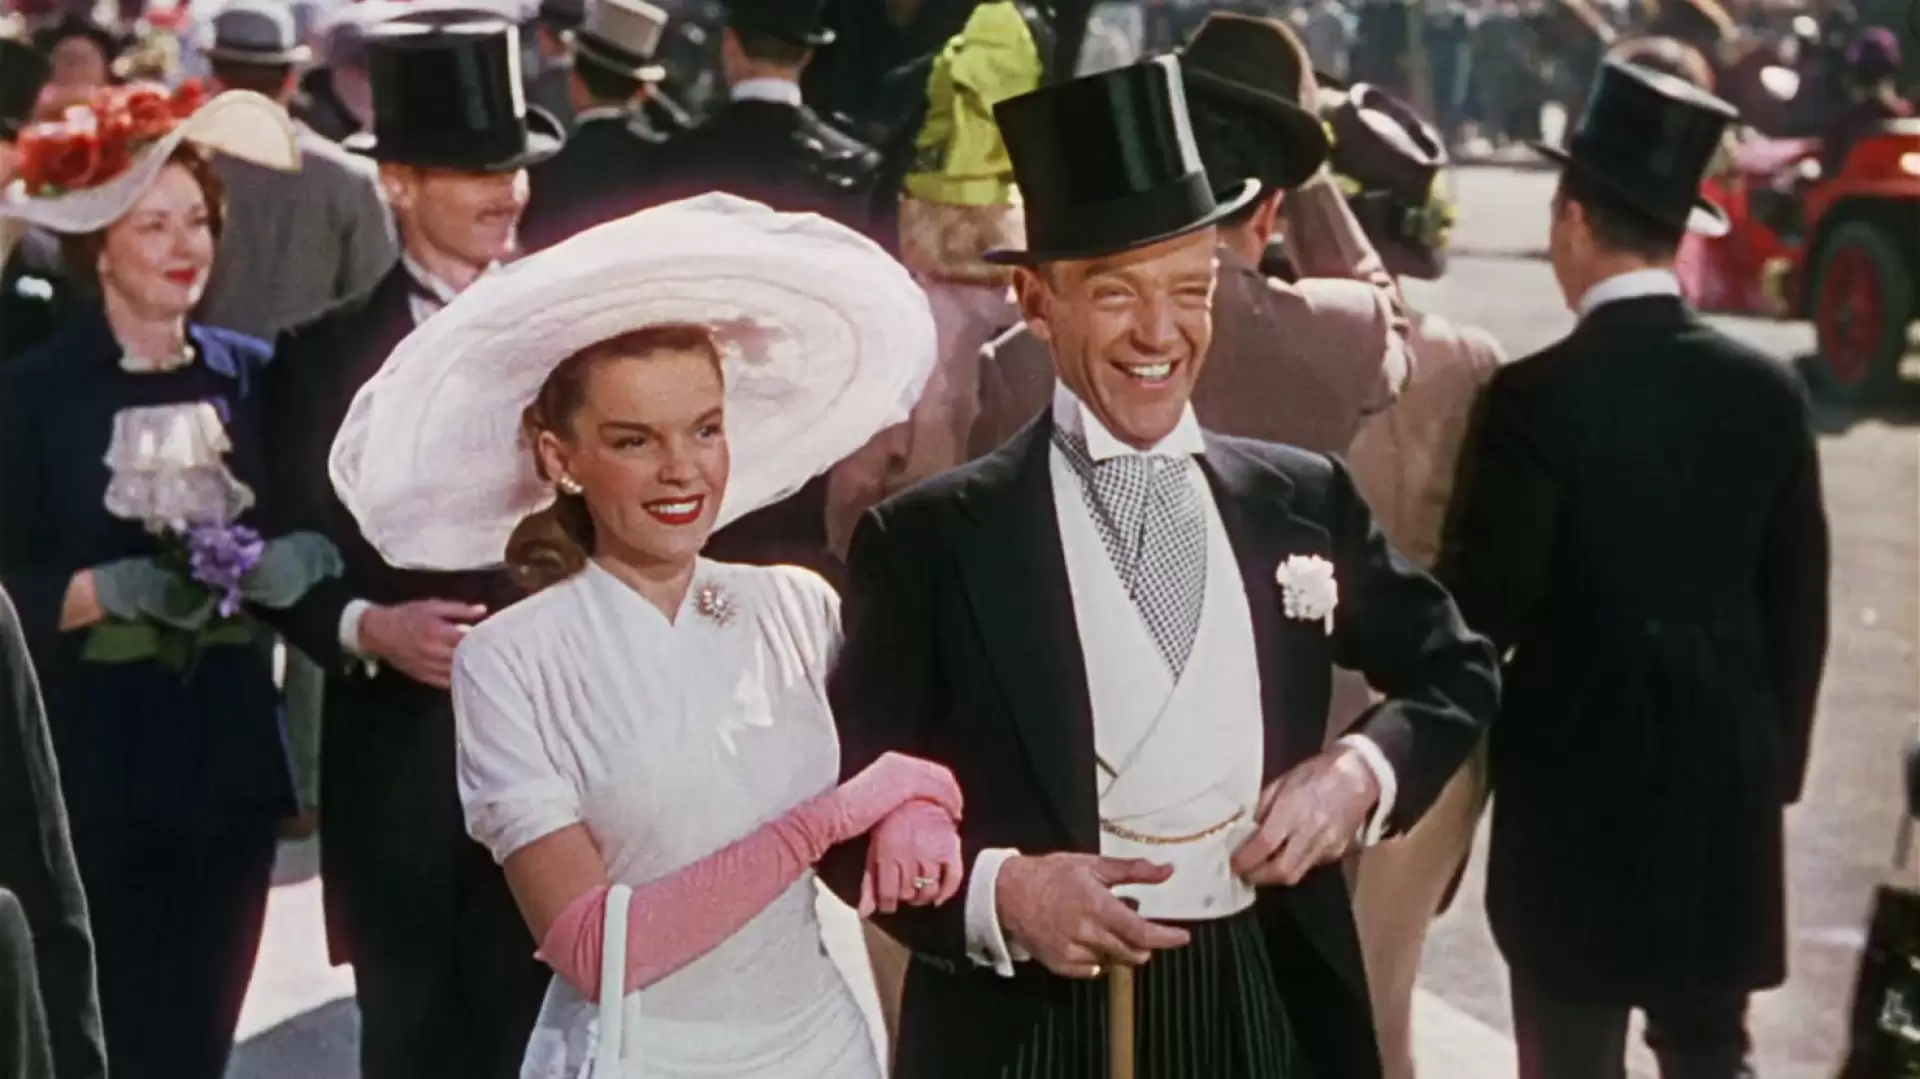 دانلود فیلم Easter Parade 1948